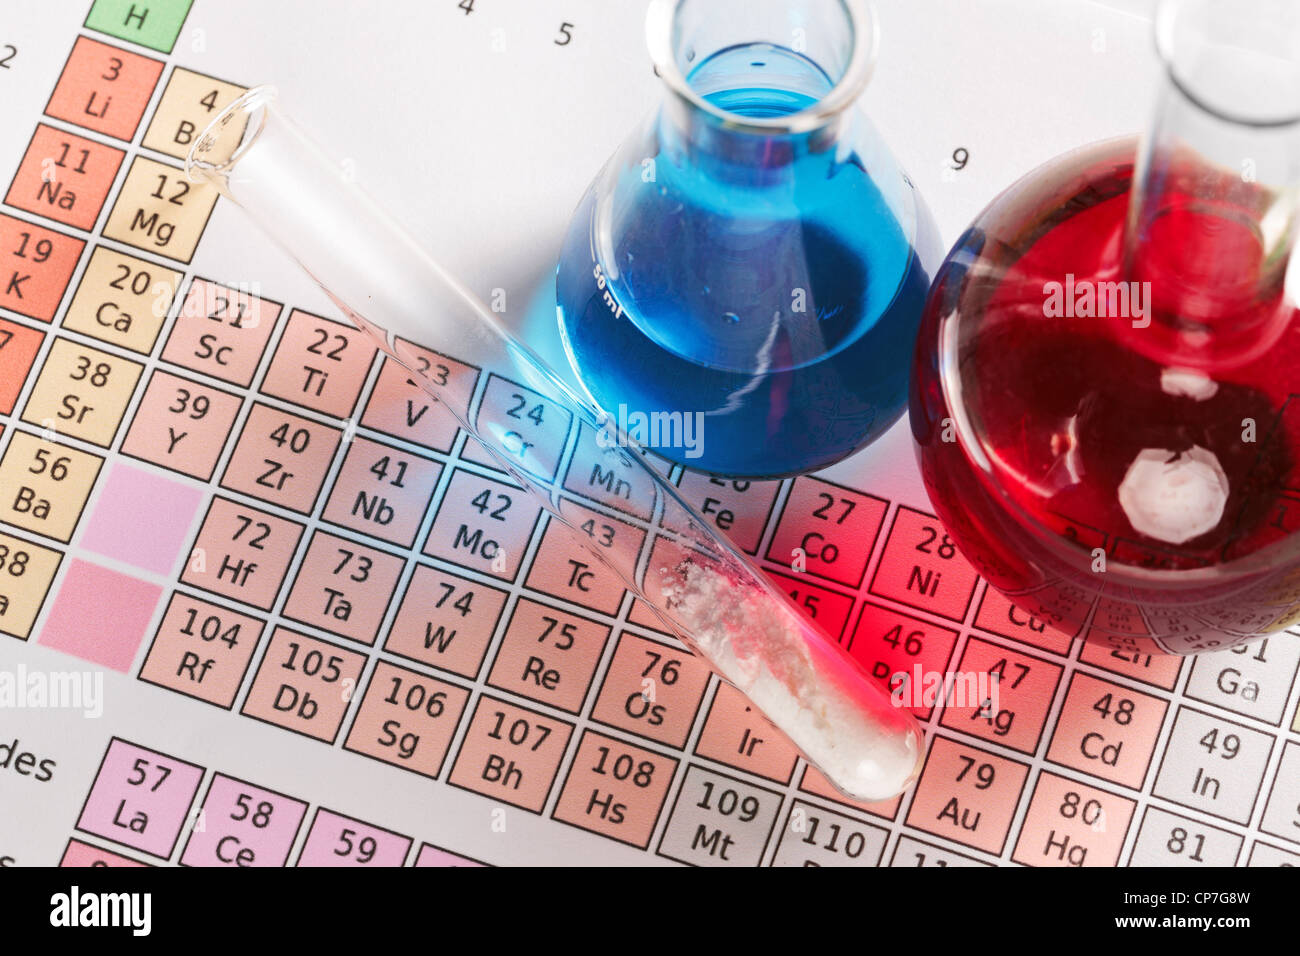 Photo d'un tableau périodique des éléments avec des flacons et tube à essai contenant des substances chimiques à la fois liquide et poudre. Banque D'Images